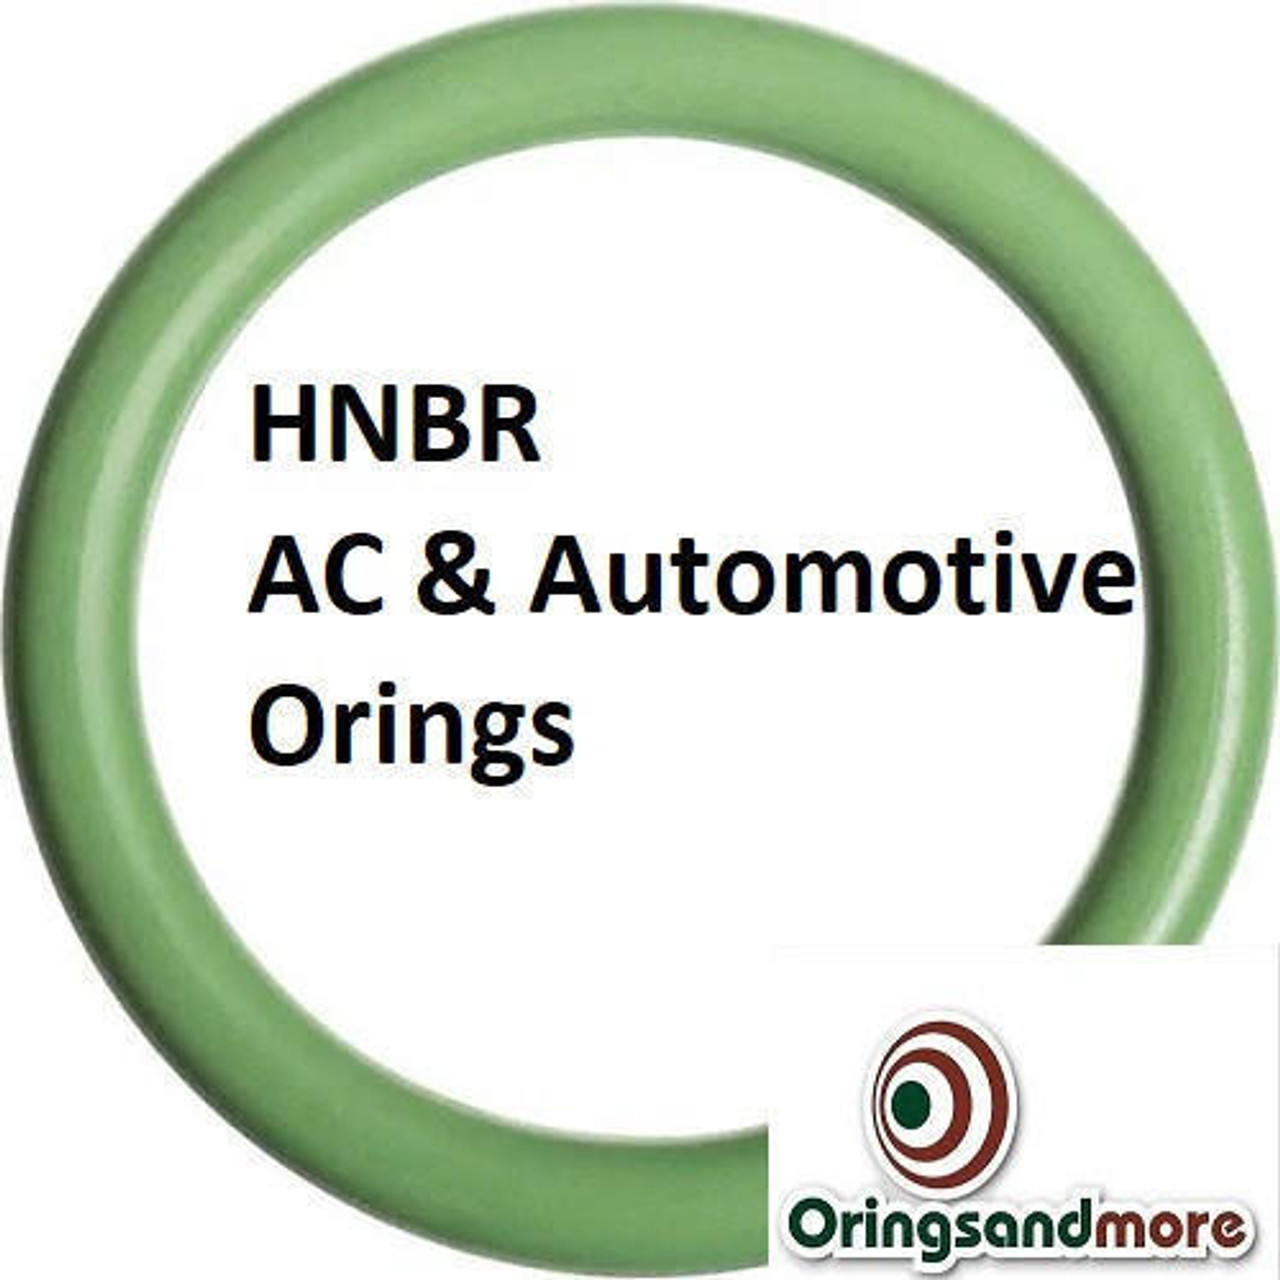 HNBR Orings  # 122-70D Green Minimum 10 pcs